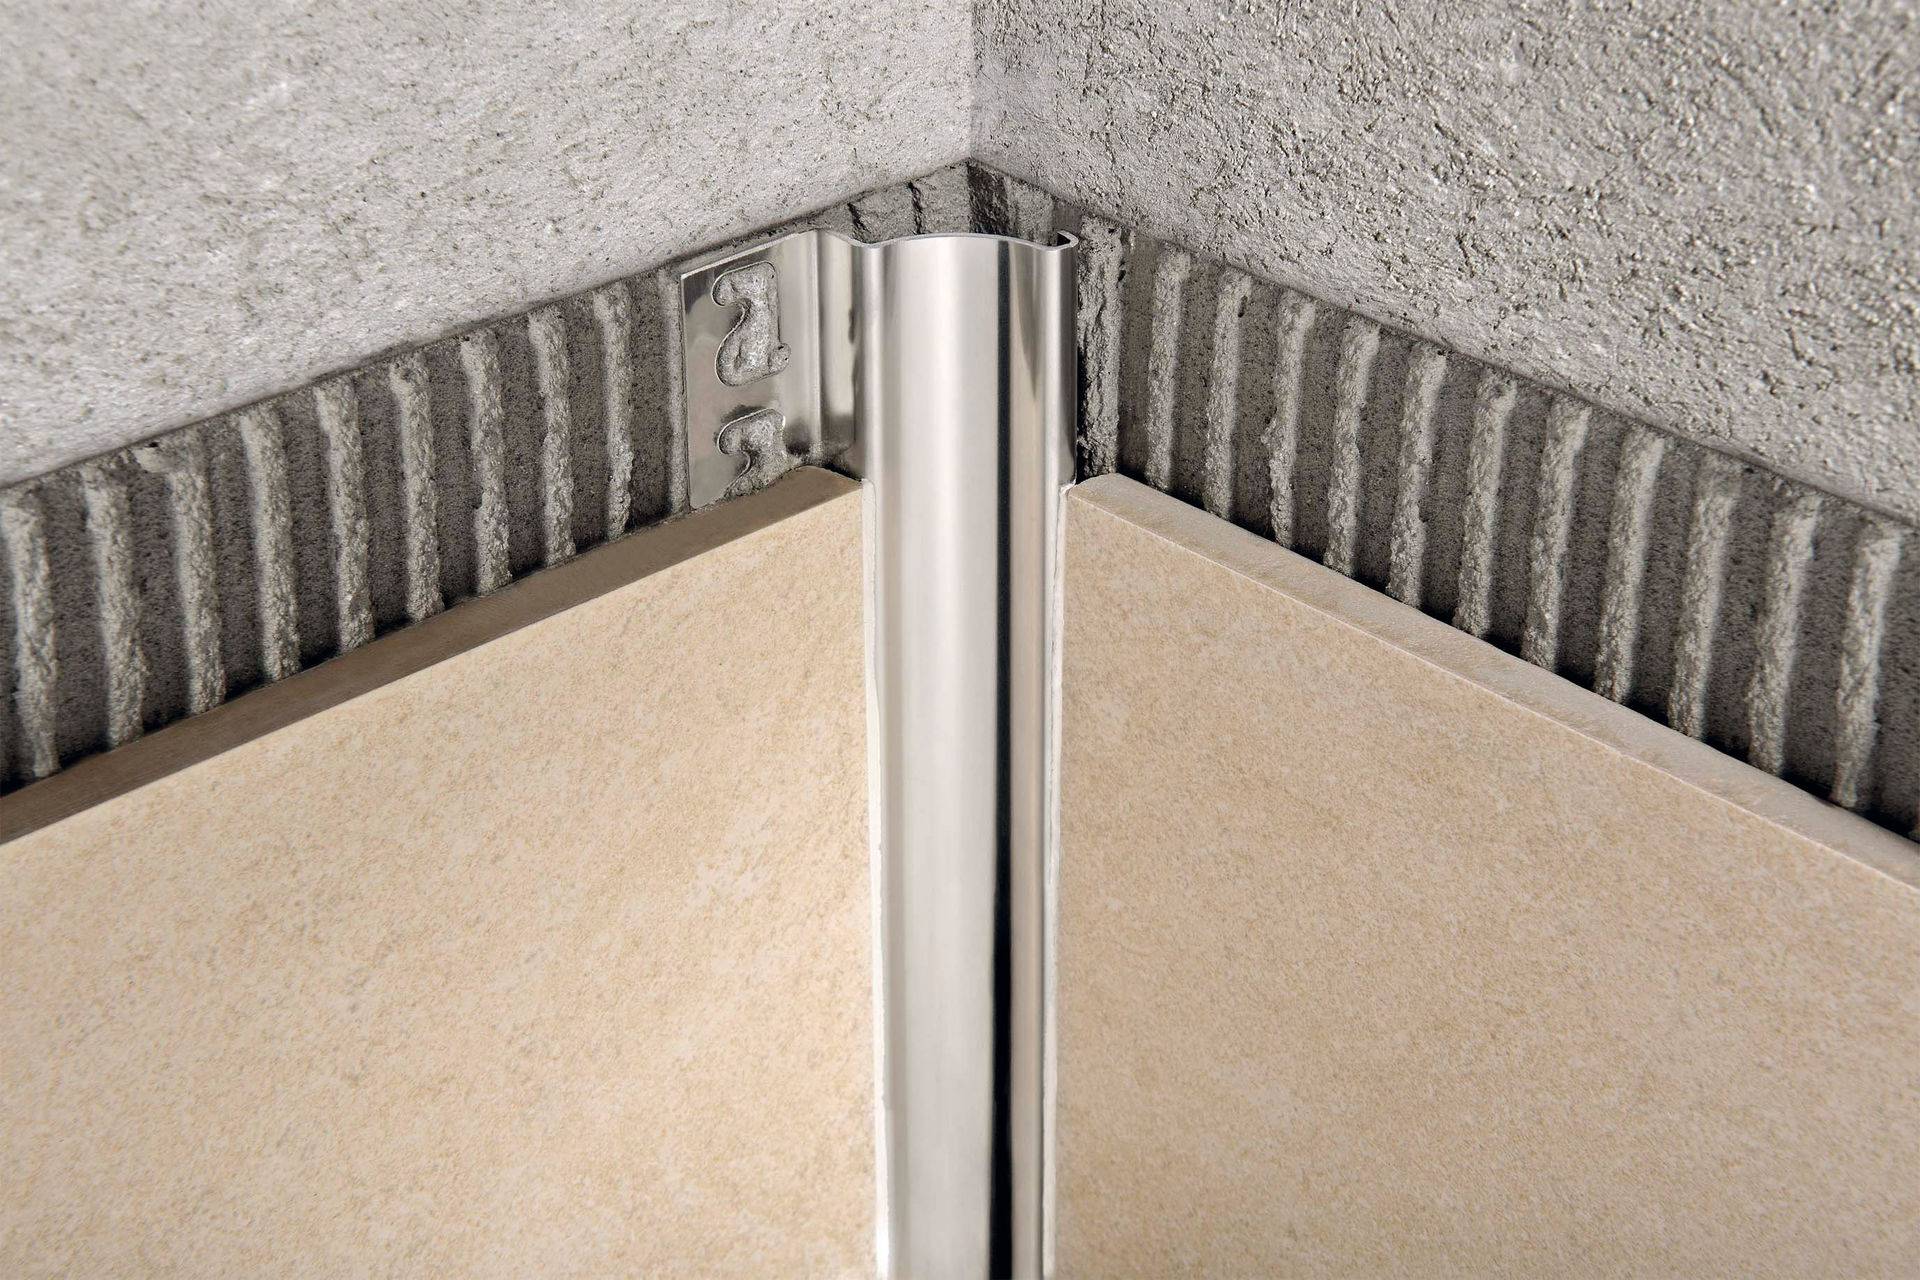 Уголки для стен для защиты: какие разновидности бывают, как не только защитить углы, но и красиво задекорировать пространство алюминиевыми, деревянными или силиконовыми накладками